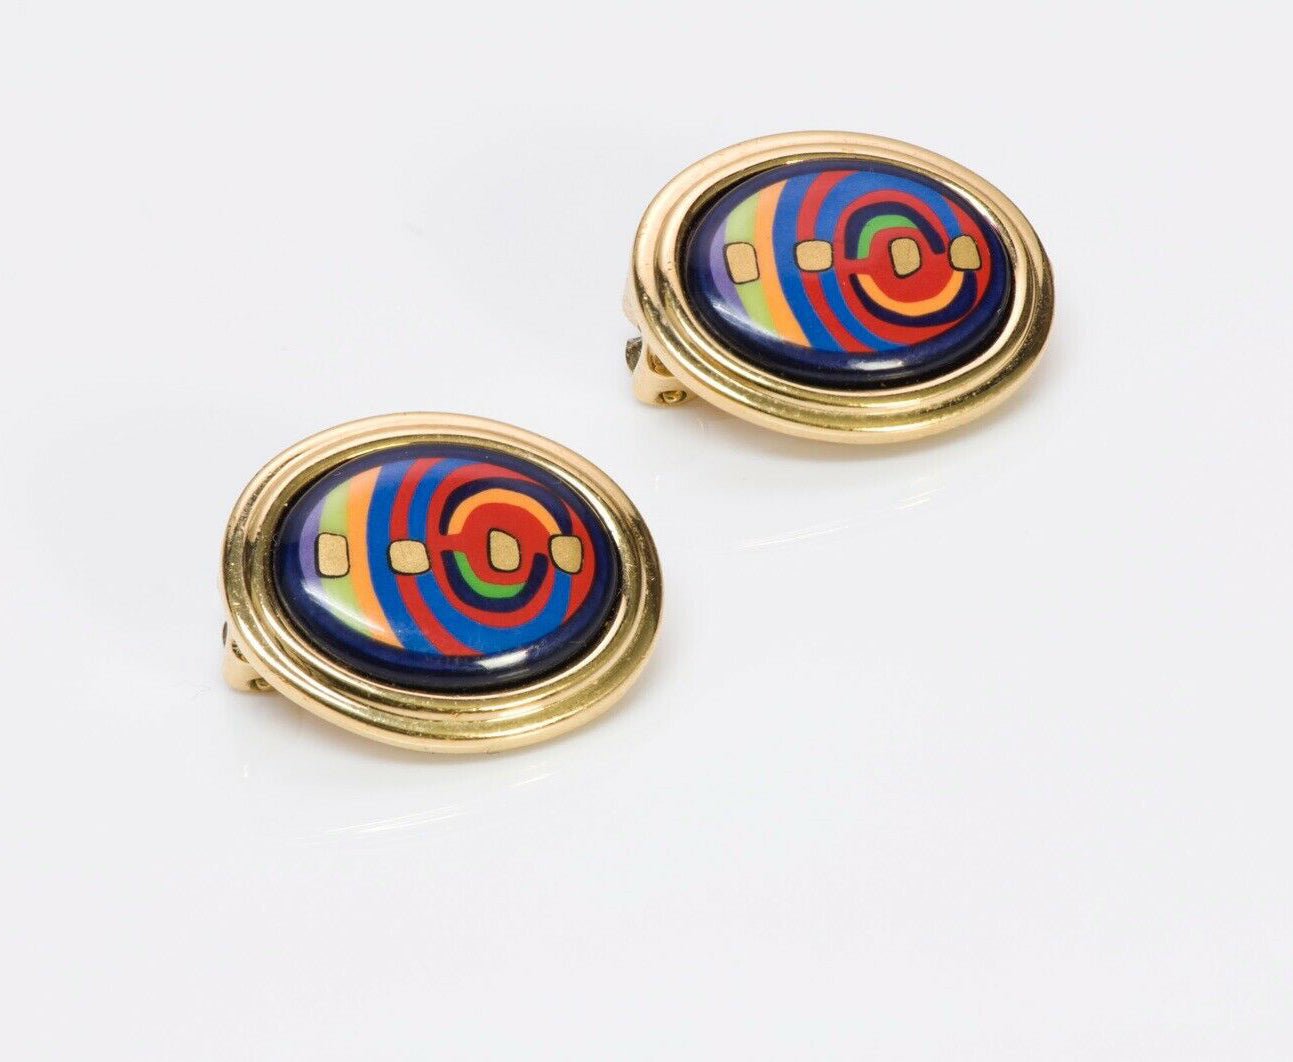 Frey Wille Hundertwasser “Spiral of Life” Enamel Earrings